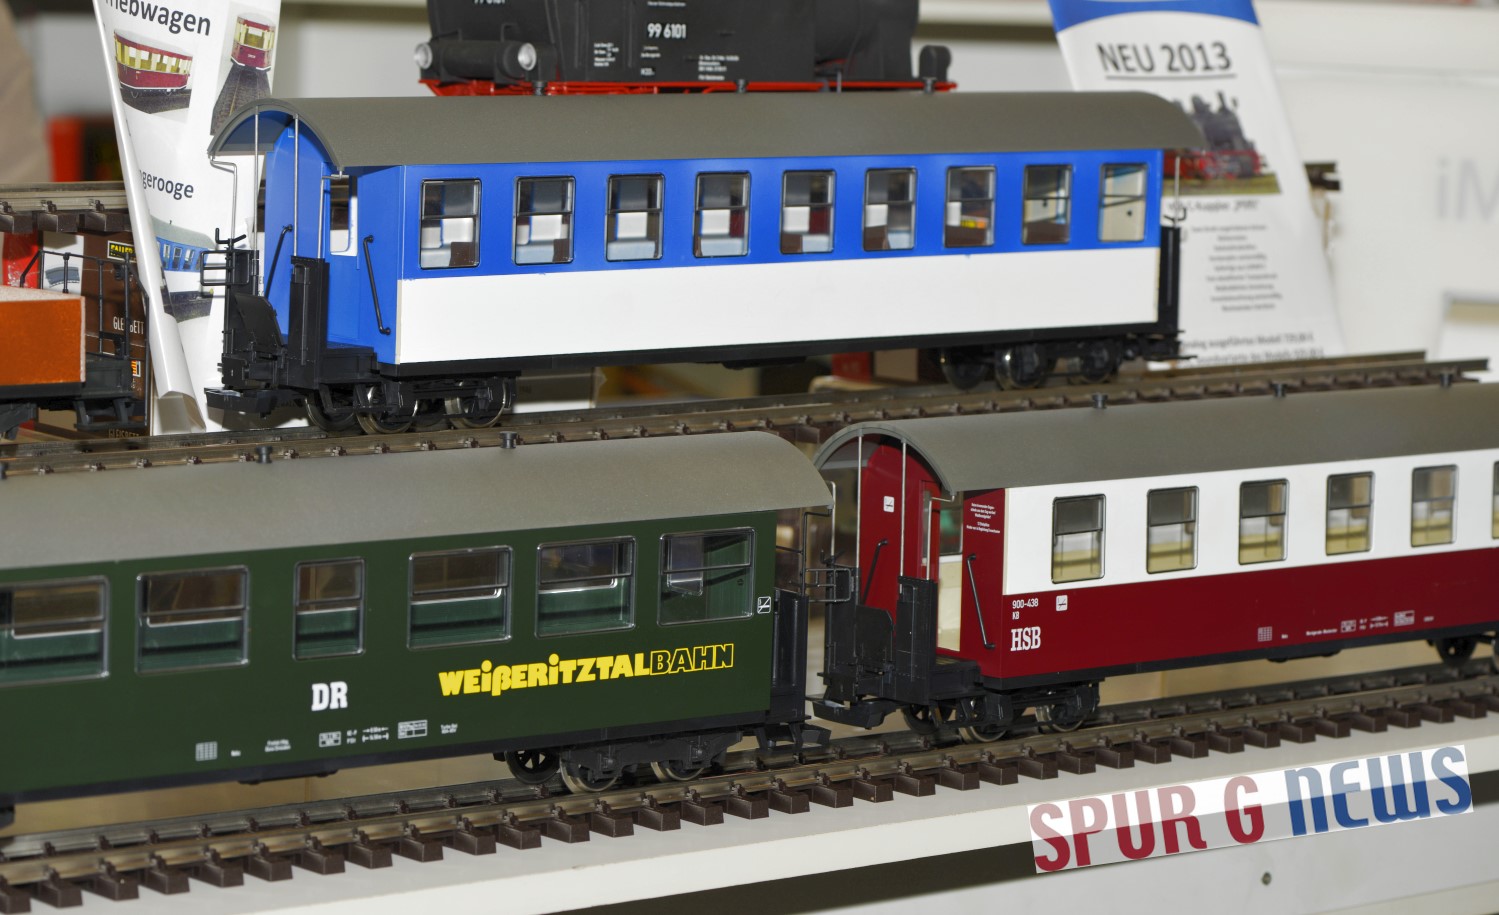 Personenwagen - Wangerooge(blau), Weieritztalbahn(grn) und HSB(rot) von Train Line 45